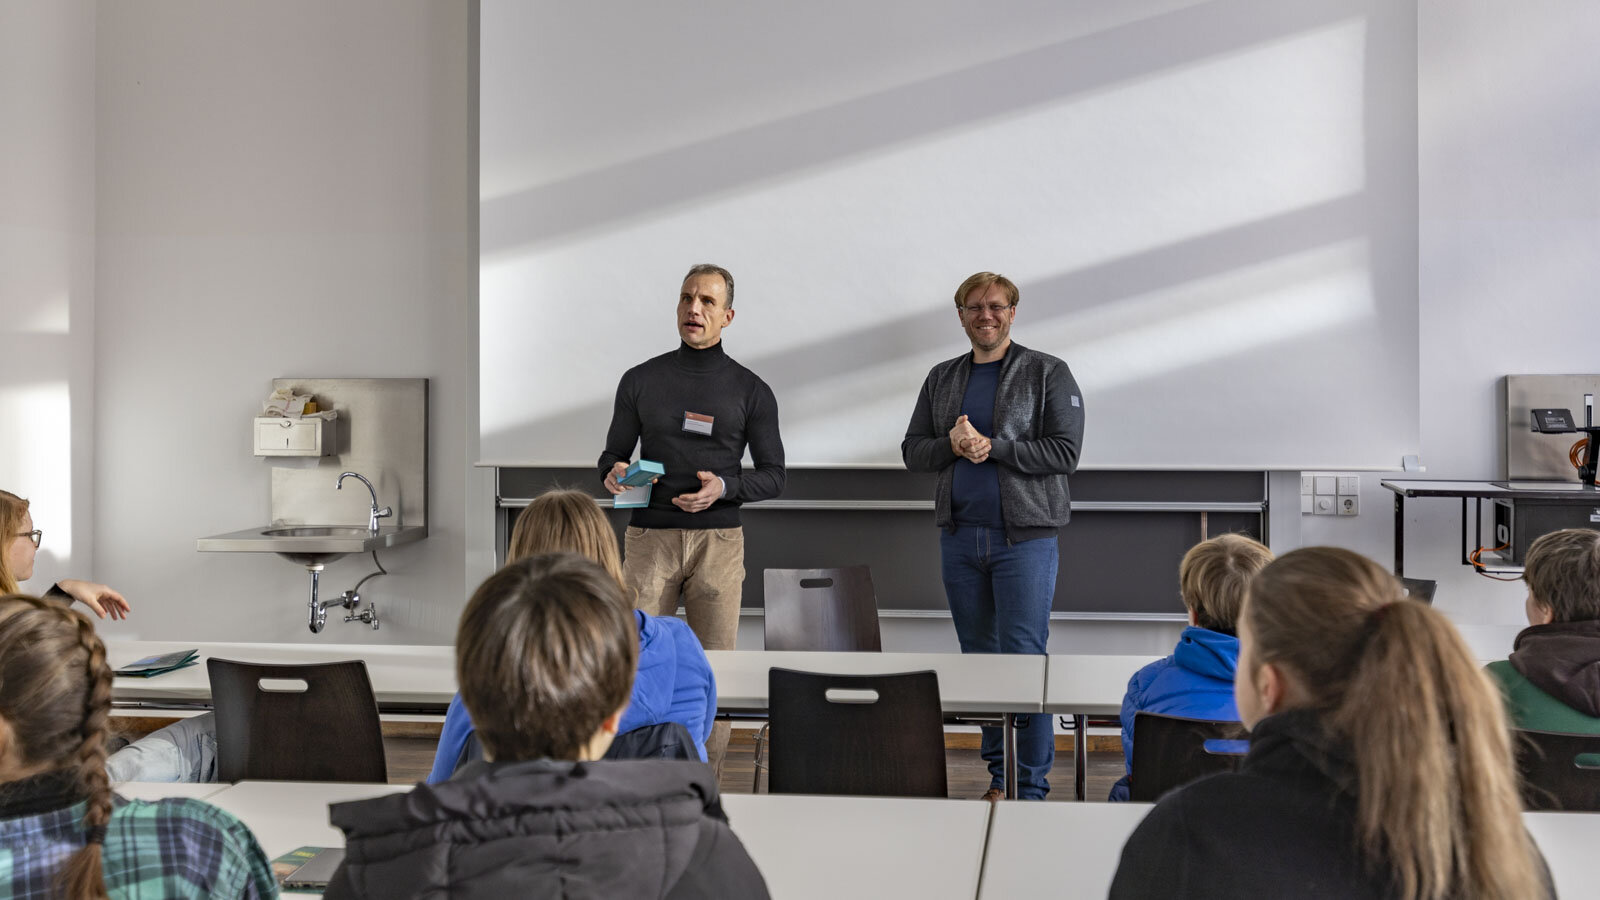 Zwei Männer stehen vor einer Tafel und sprechen mit Personen im Seminarraum.